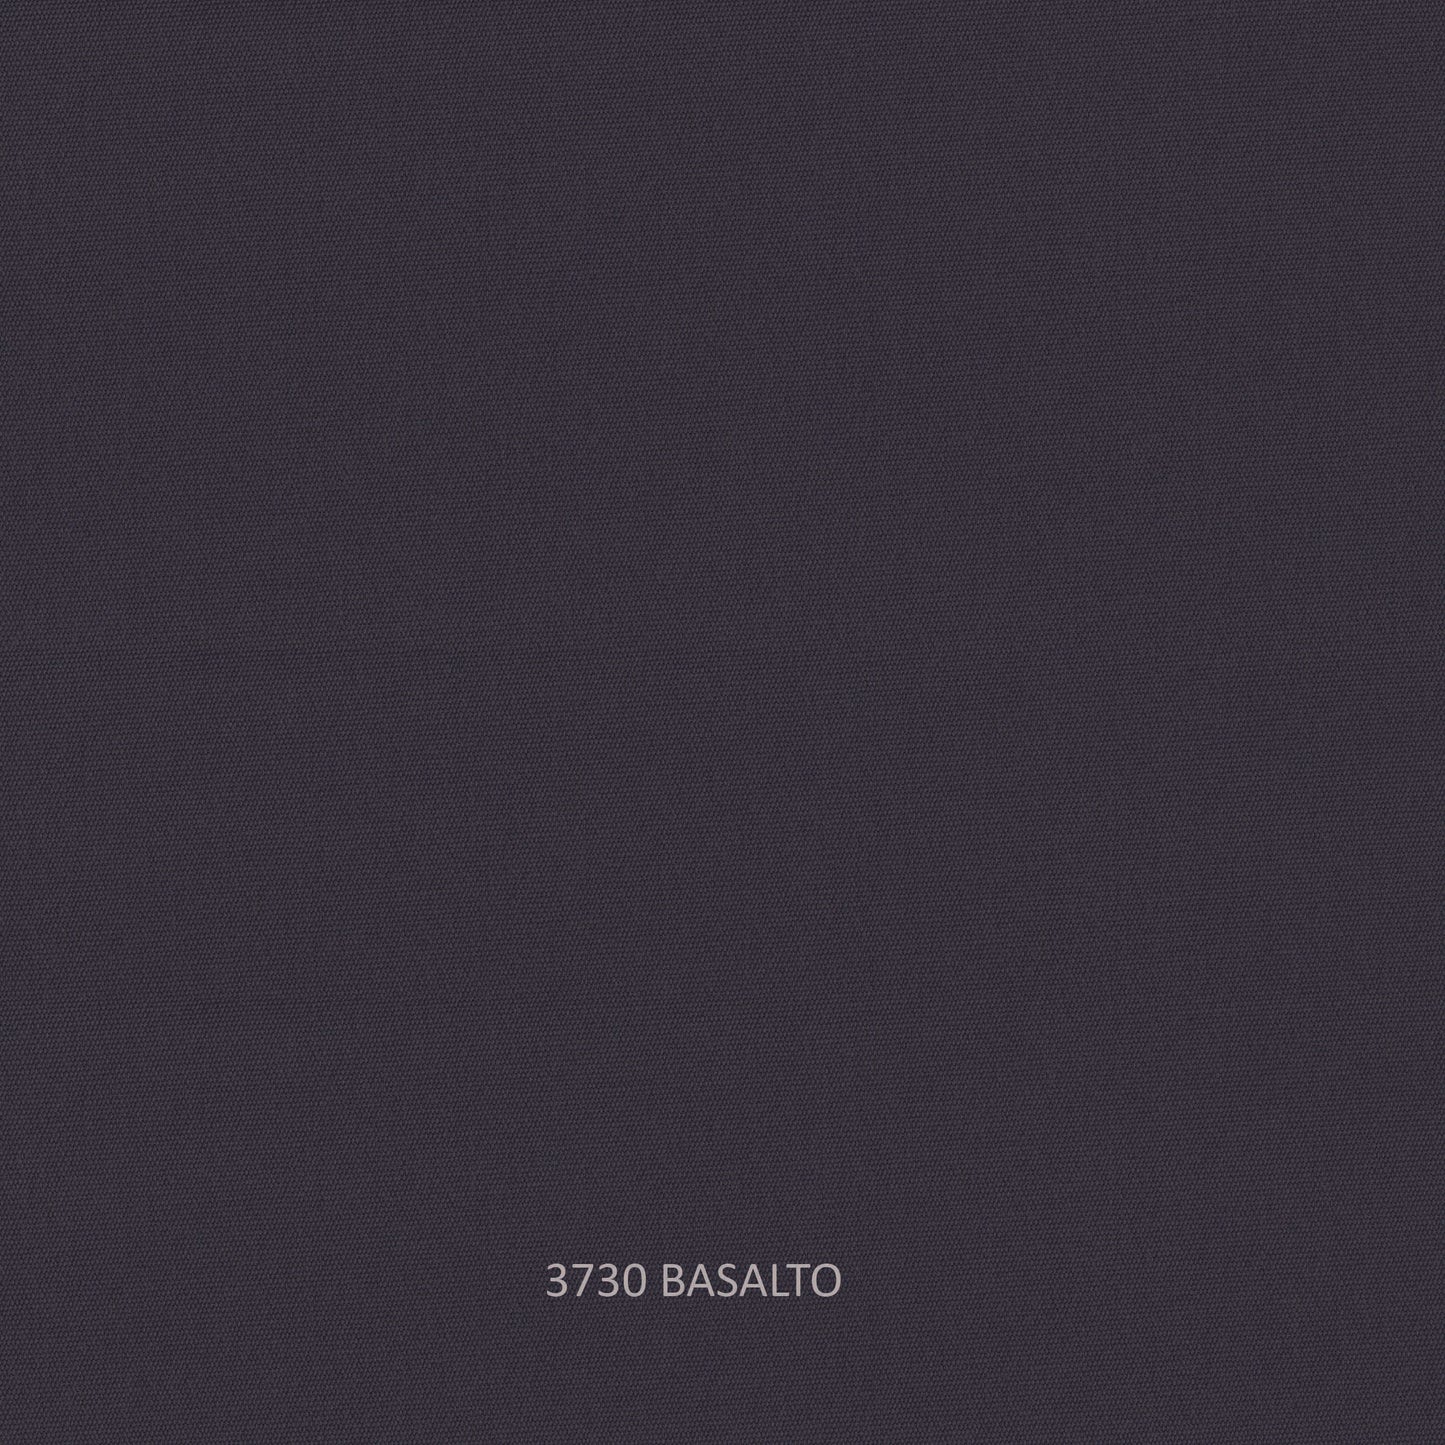 Milano Sofa - PadioLiving - Milano Sofa - Outdoor Sofa - Dark Grey 21mm Strap - Basalto (£2398) - PadioLiving